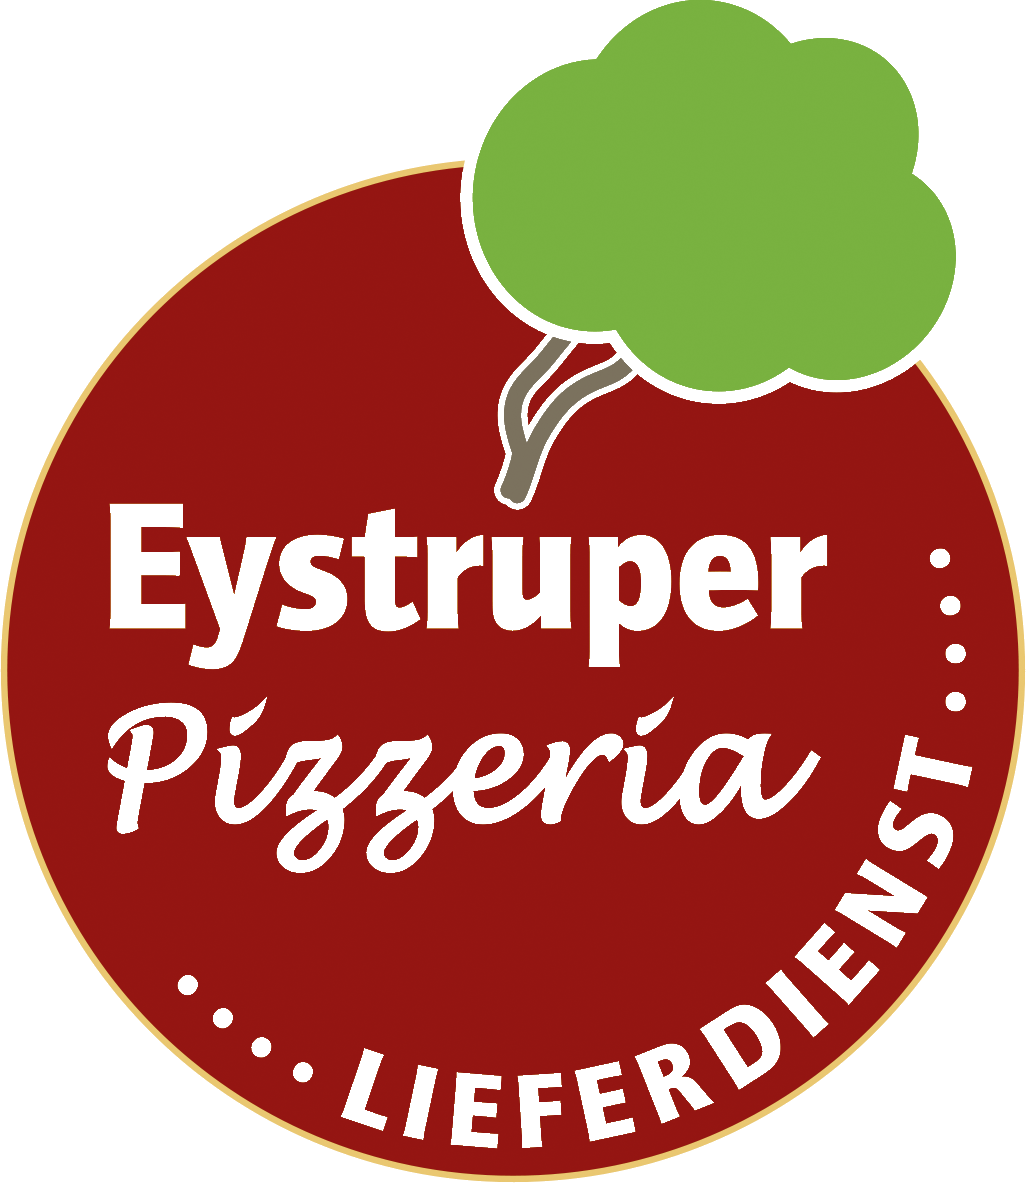 Eystruper Pizzeria